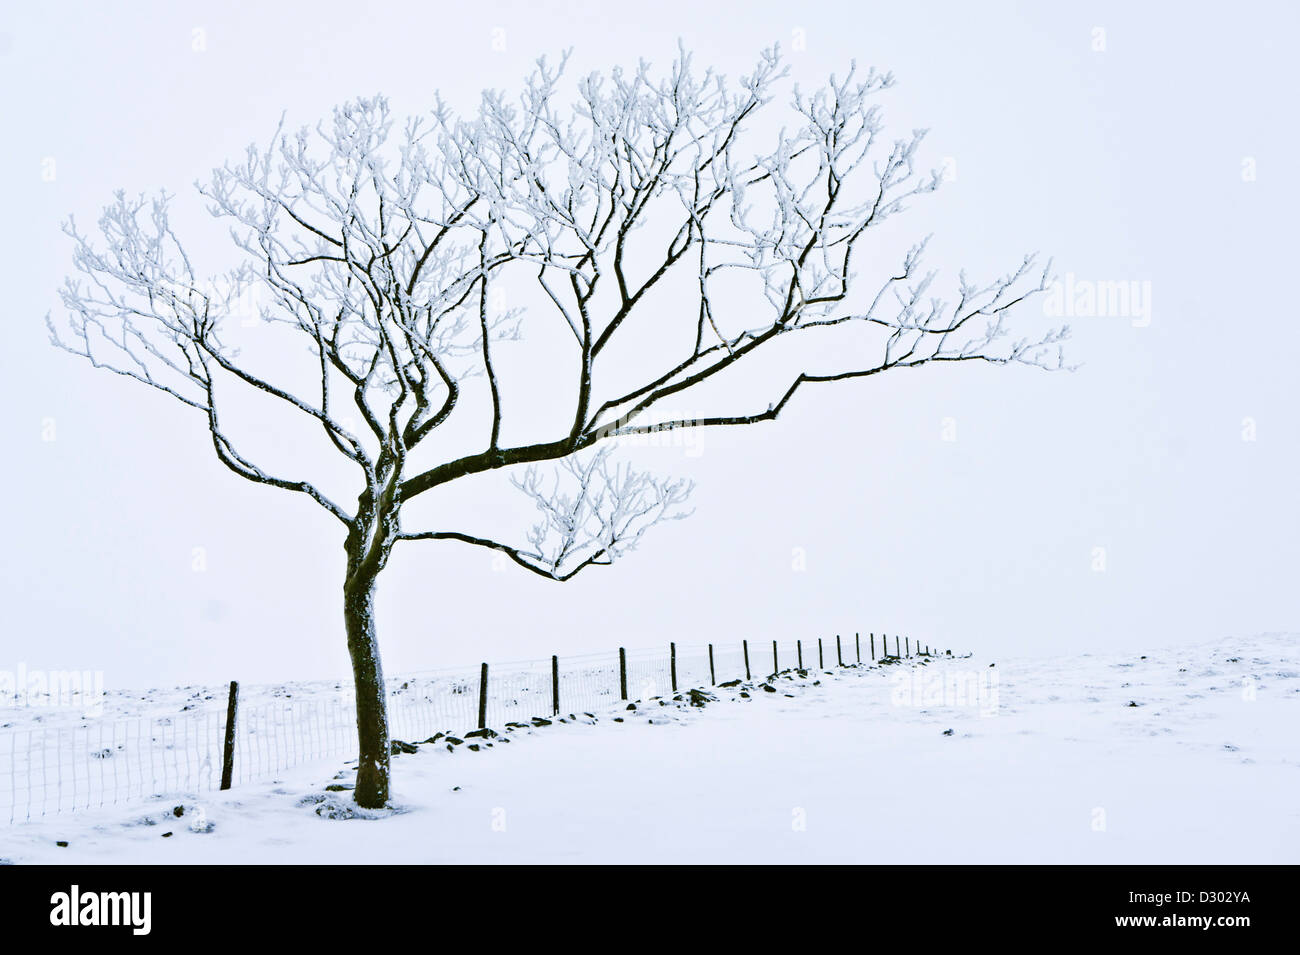 Paysage d'hiver arbre couvert de neige contre une clôture de fil près de Rushup Edge Derbyshire Peak district parc national Angleterre UK GB Europe Banque D'Images